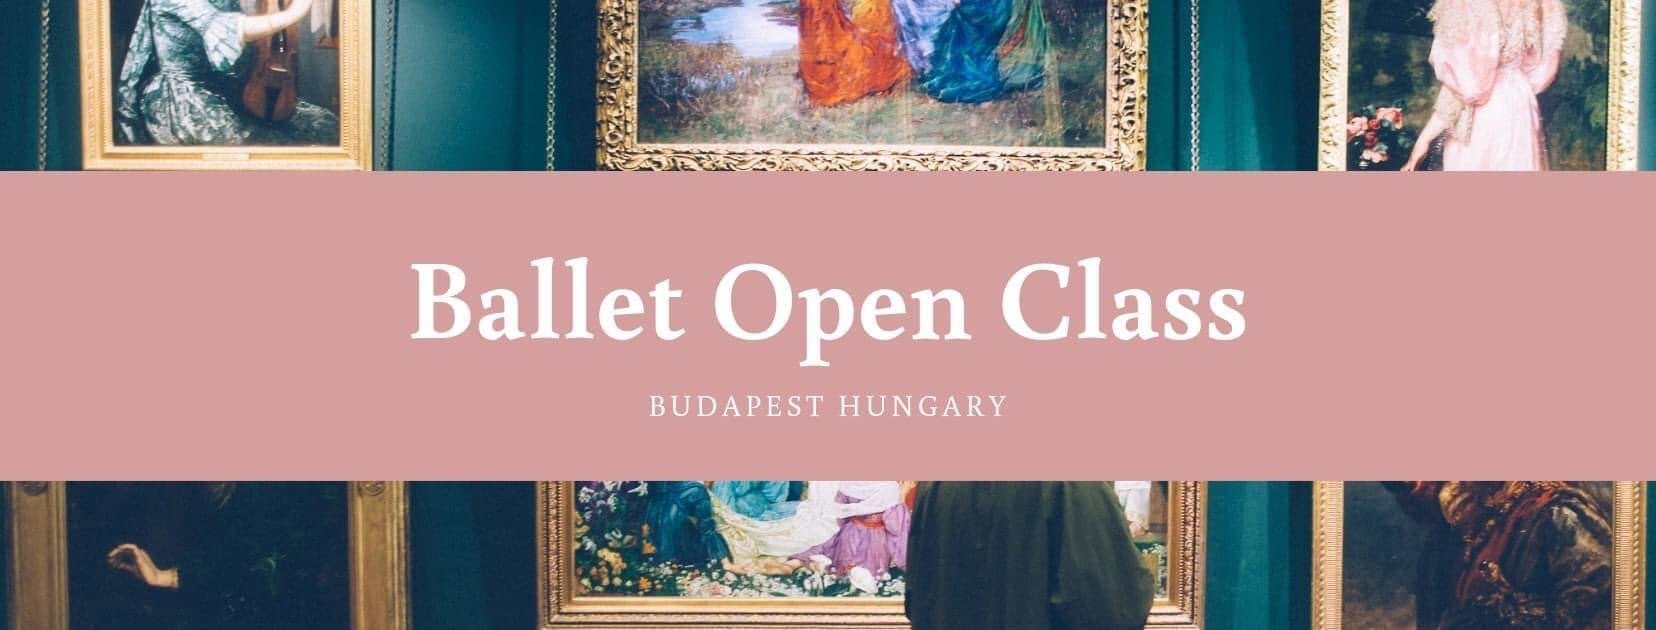 Ballet Open Class